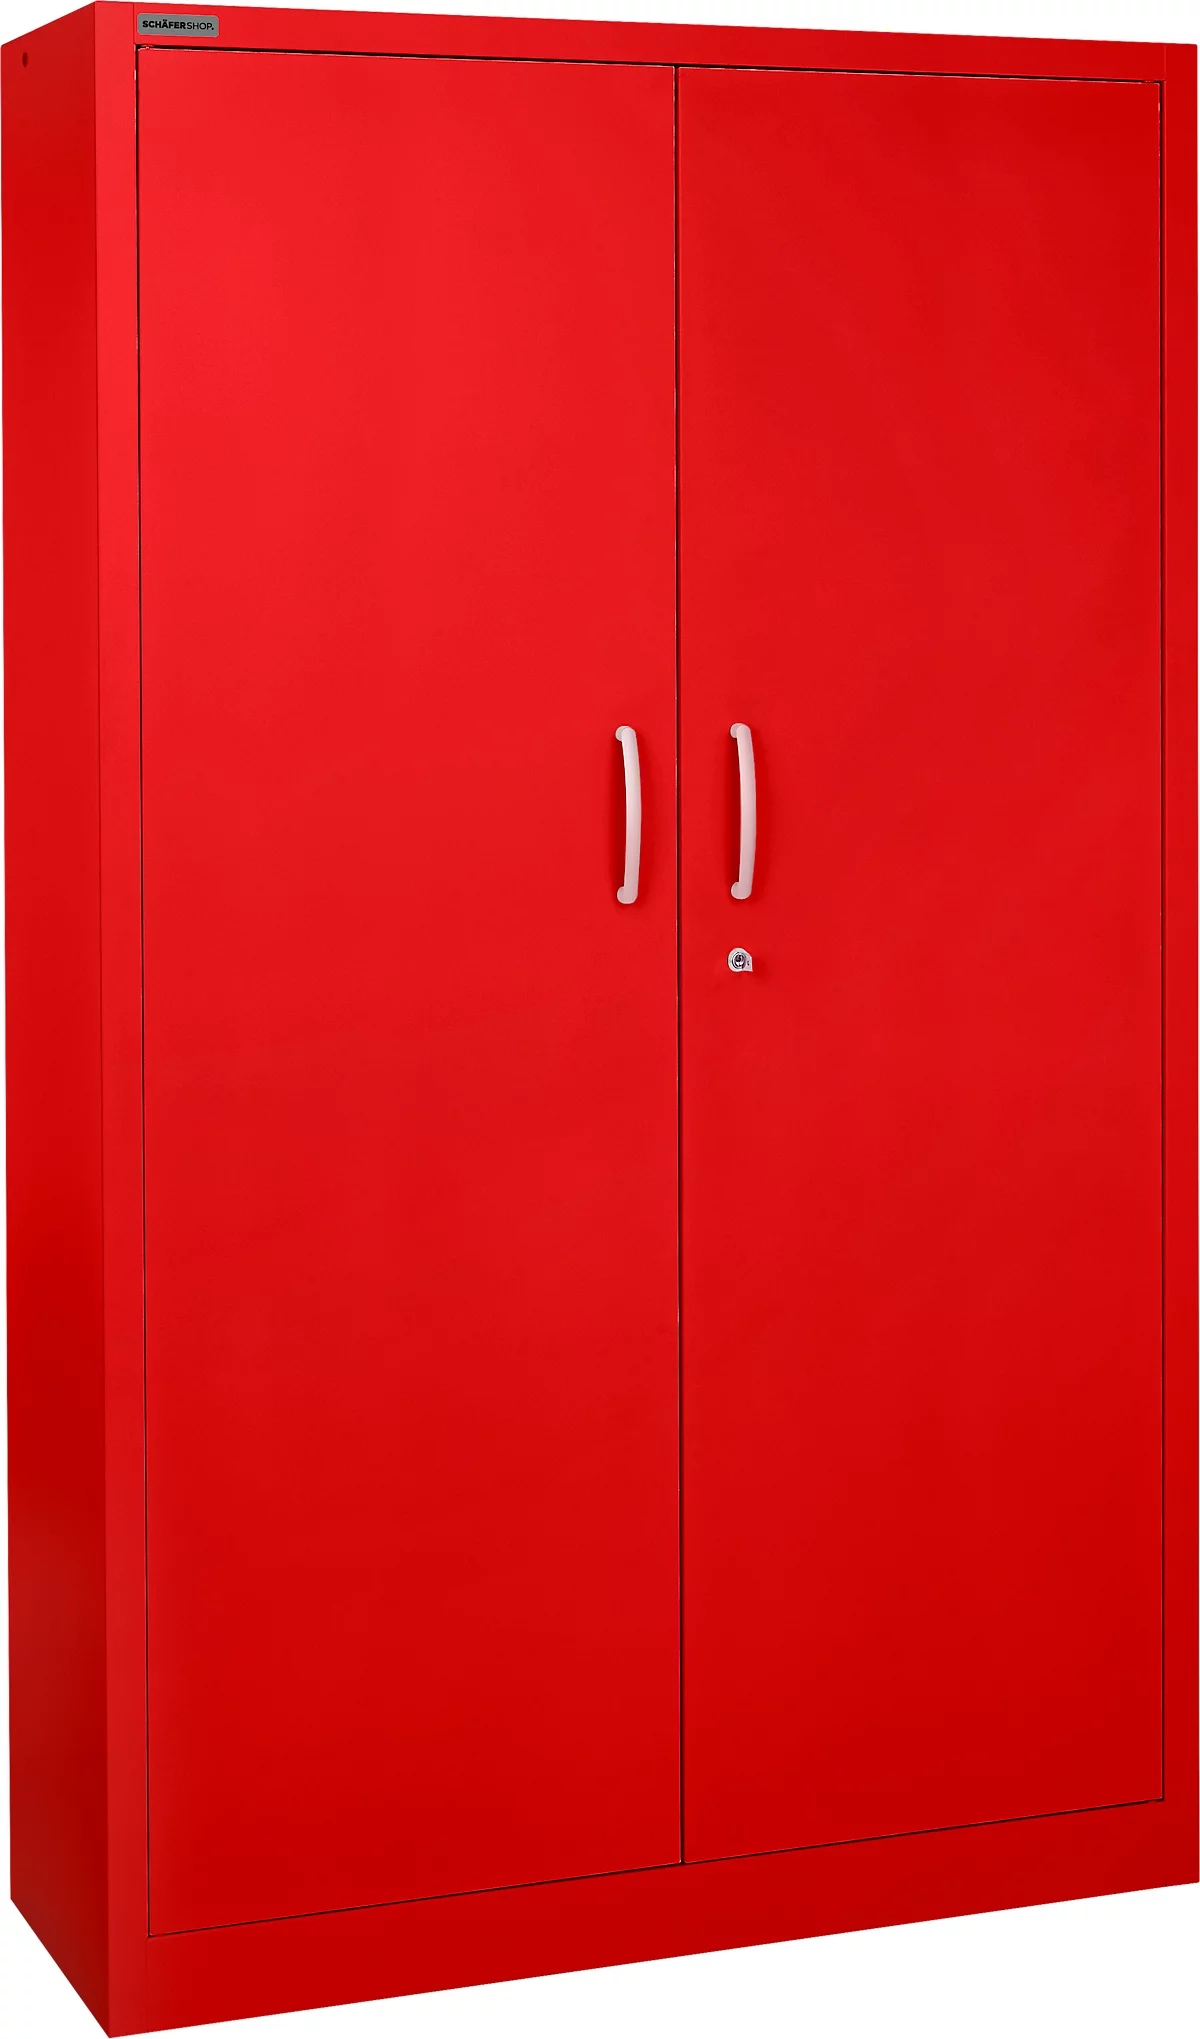 Schäfer Shop Select Armario de puertas batientes MS iCOLOUR, acero, 5 alturas de archivo, An 1200 mm, rojo RAL 3020